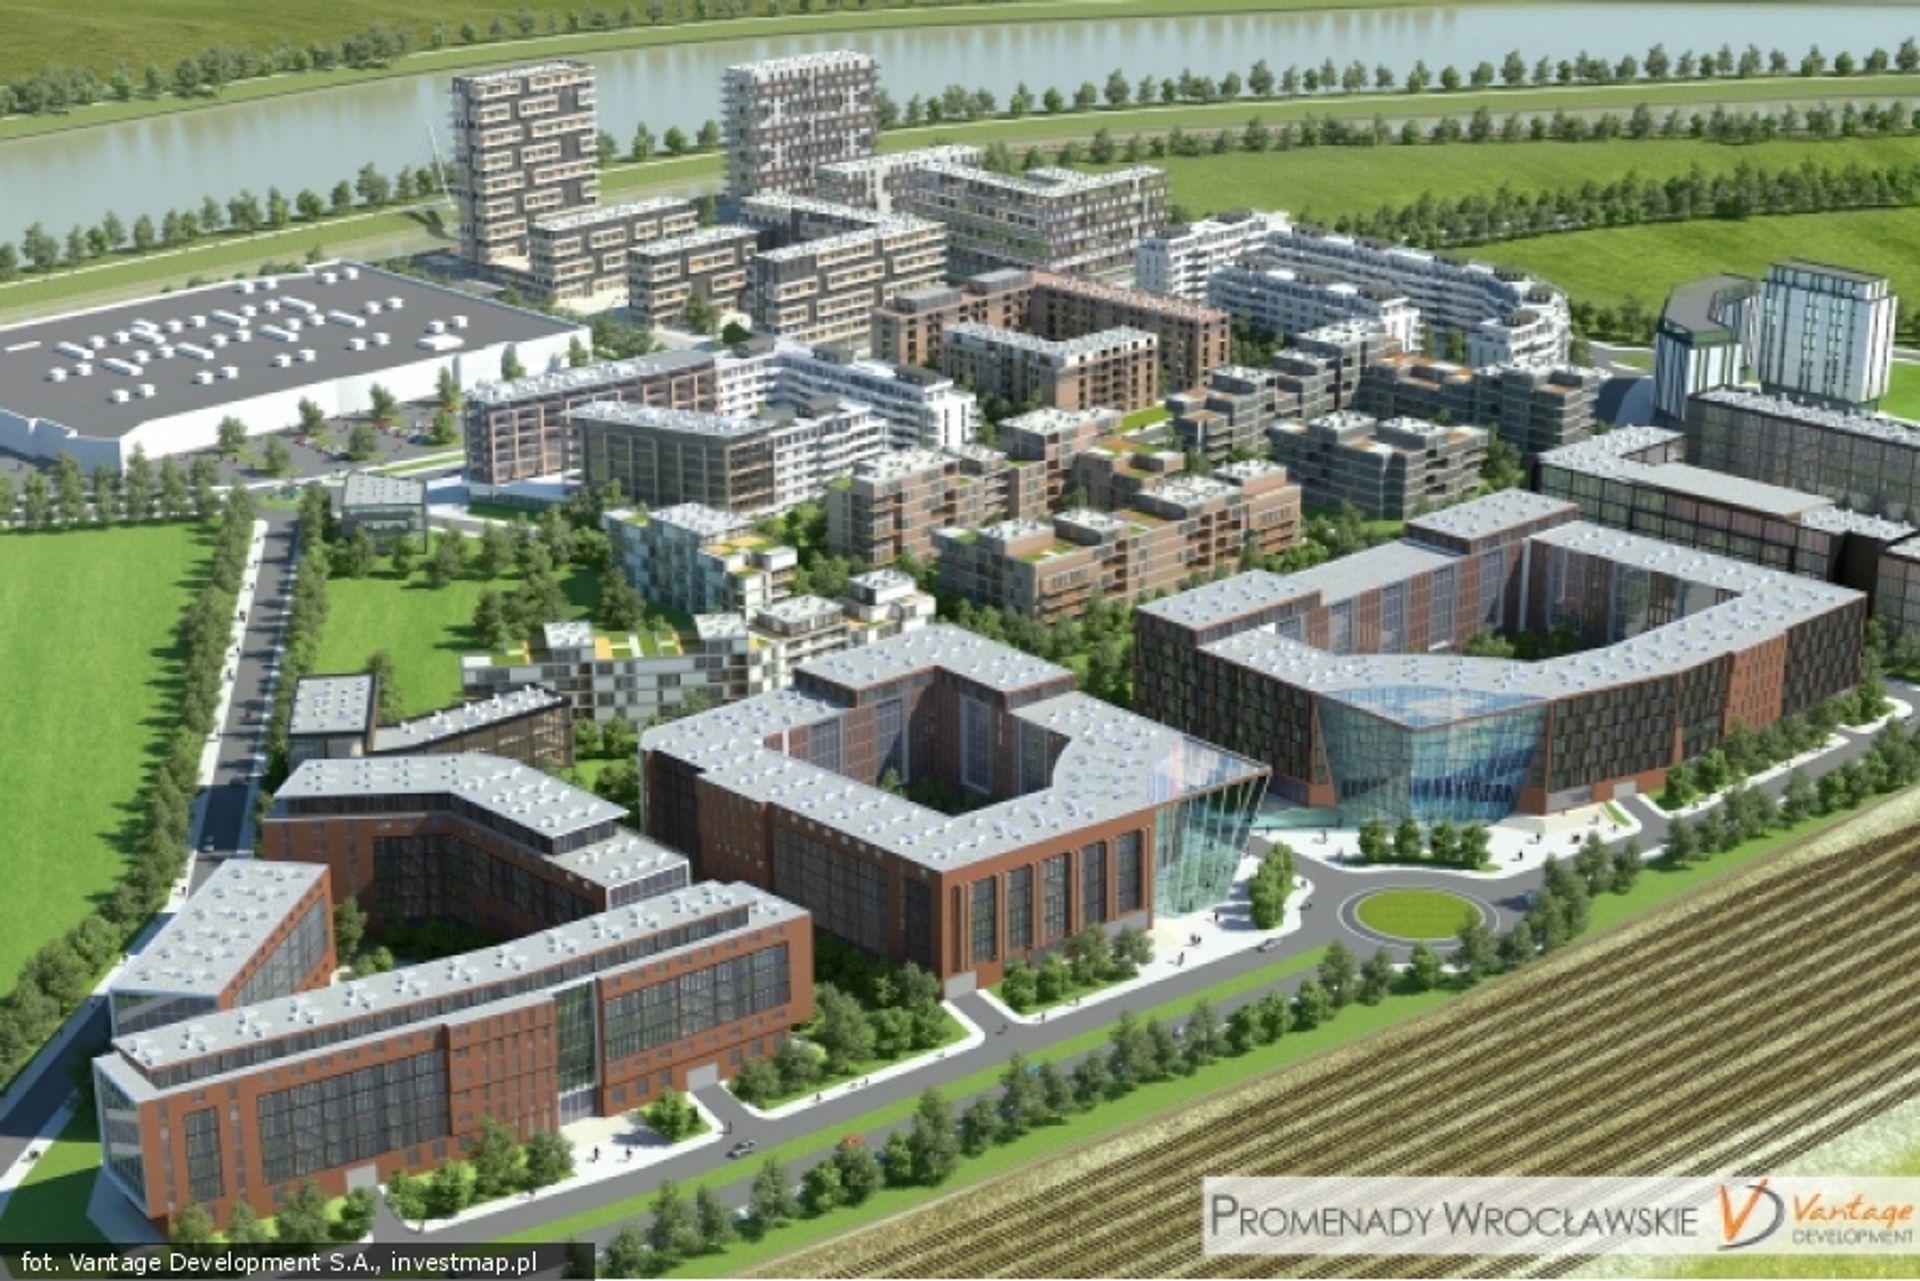  Vantage Development w 2017 roku rozpocznie kolejne inwestycje mieszkaniowe